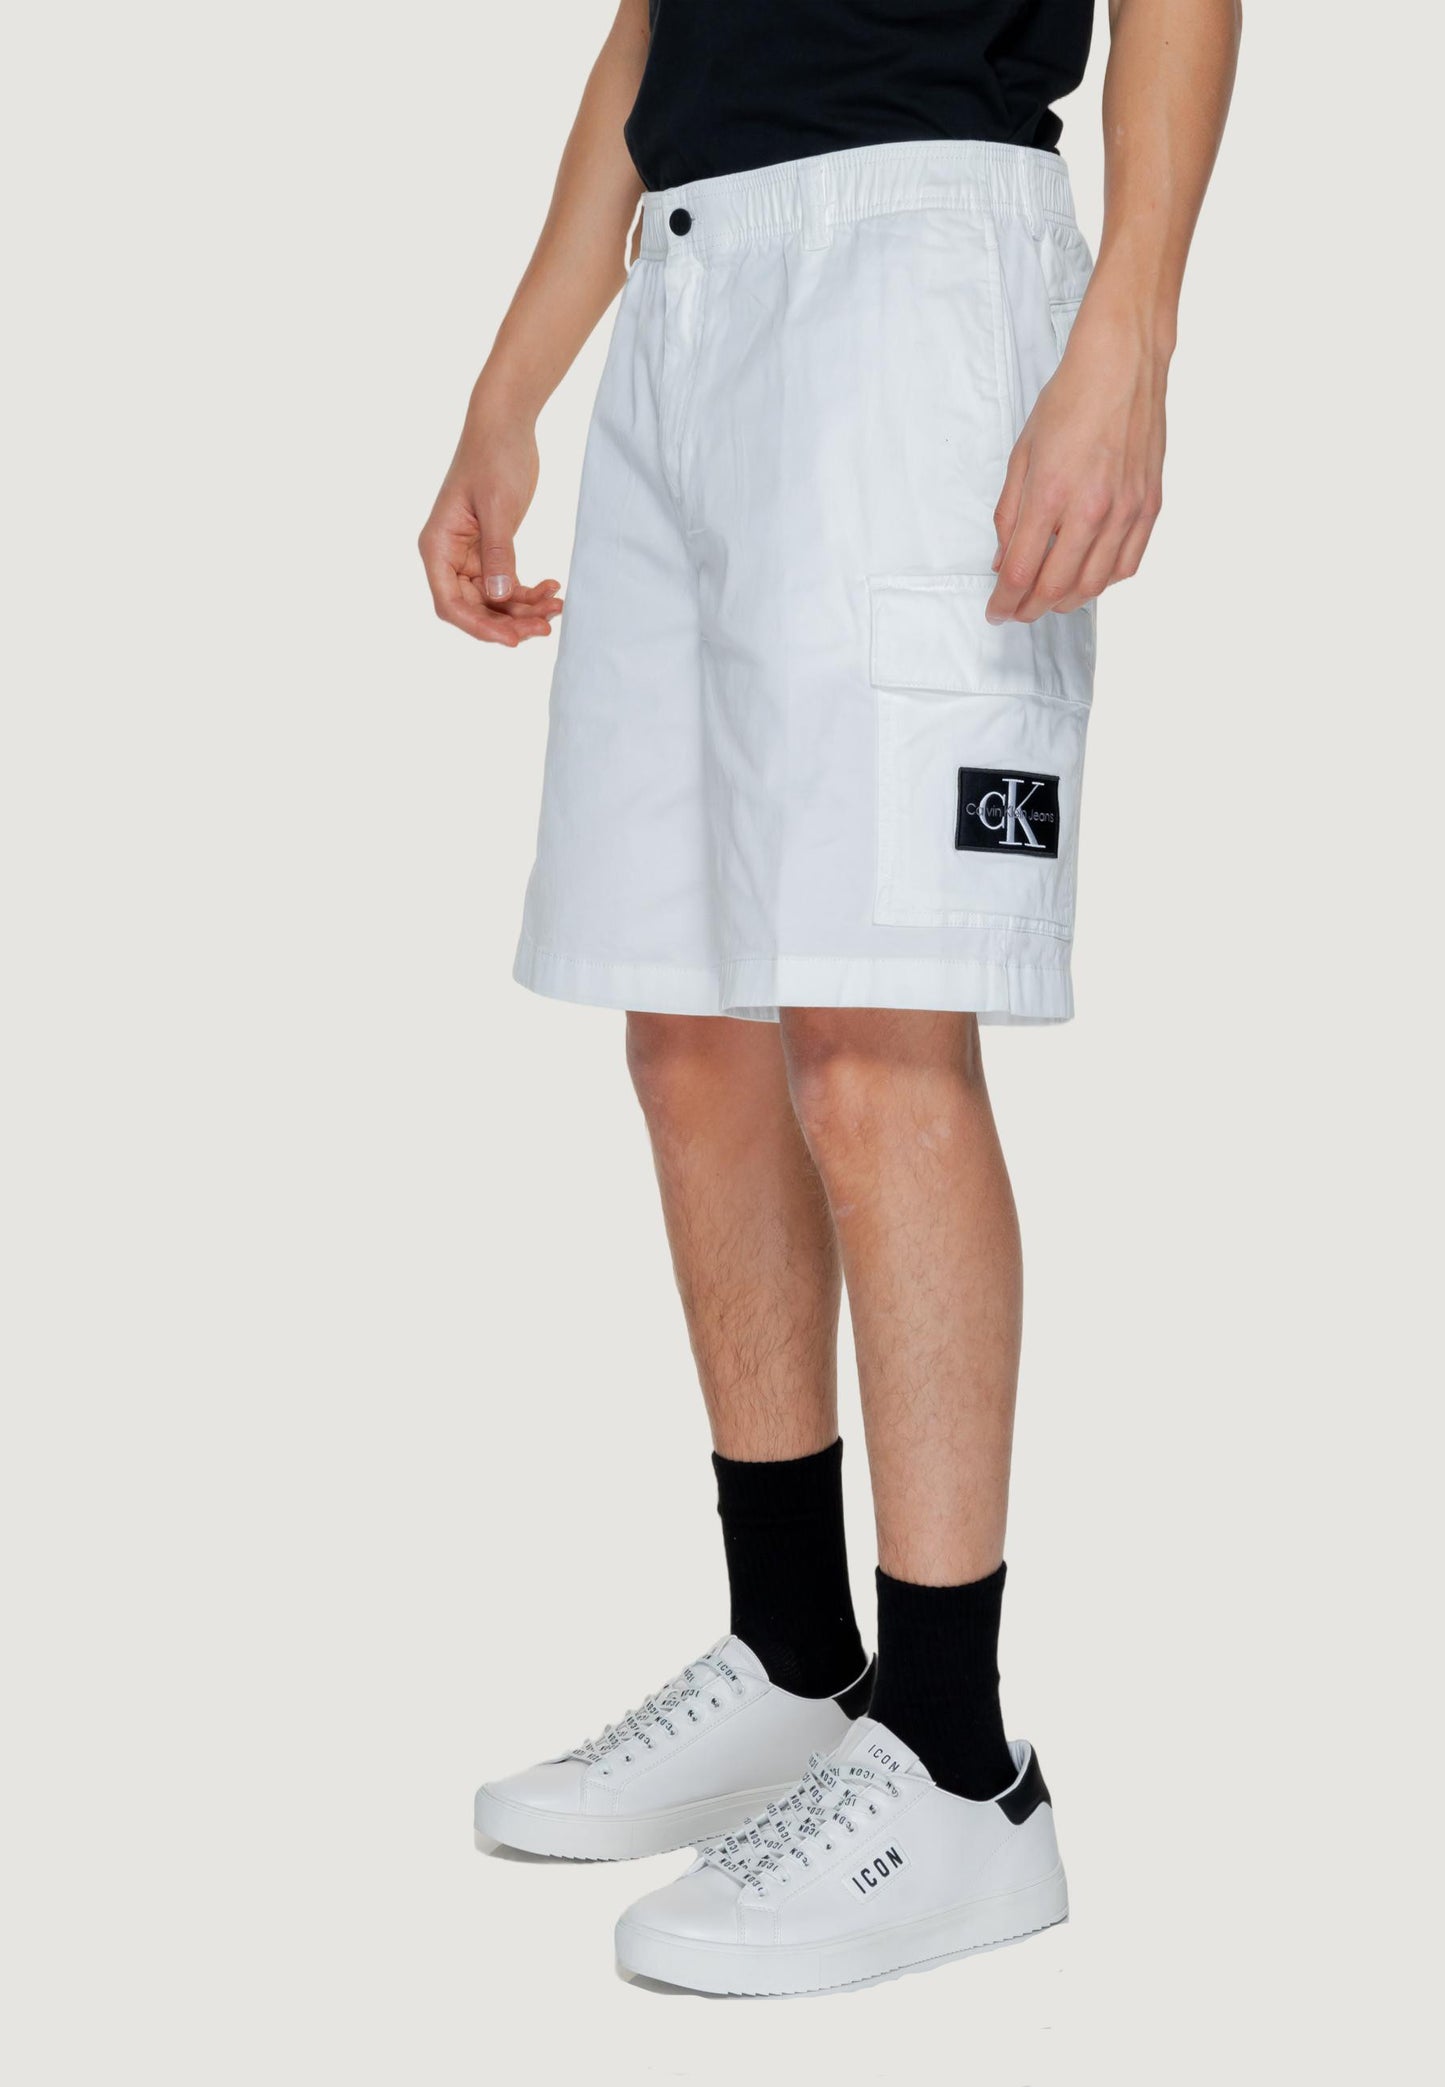 Marchio: Calvin Klein Jeans - Genere: Uomo - Tipologia: Bermuda - Stagione: PrimColore: bianco, Taglia: S